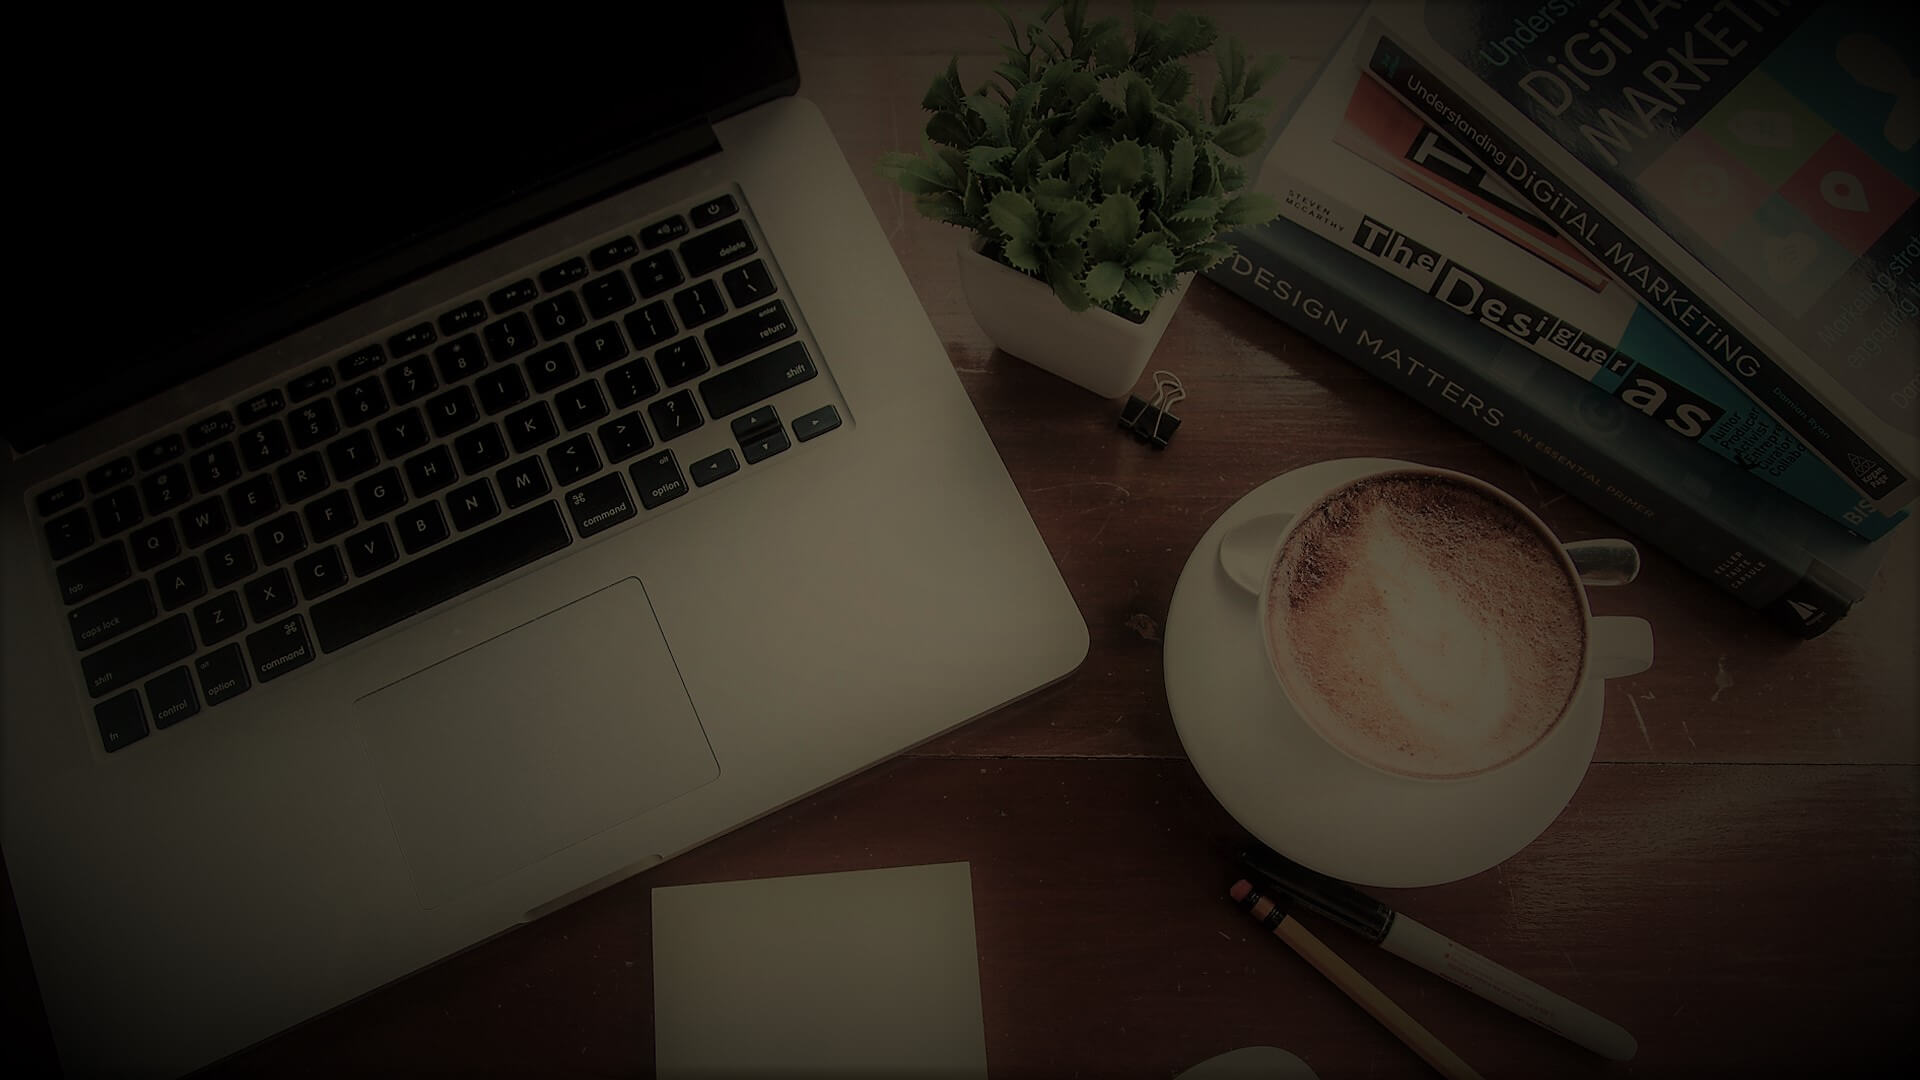 un ordinateur portable, un café, des livres, un cayon, un stylo, et une petite plante sur un bureau